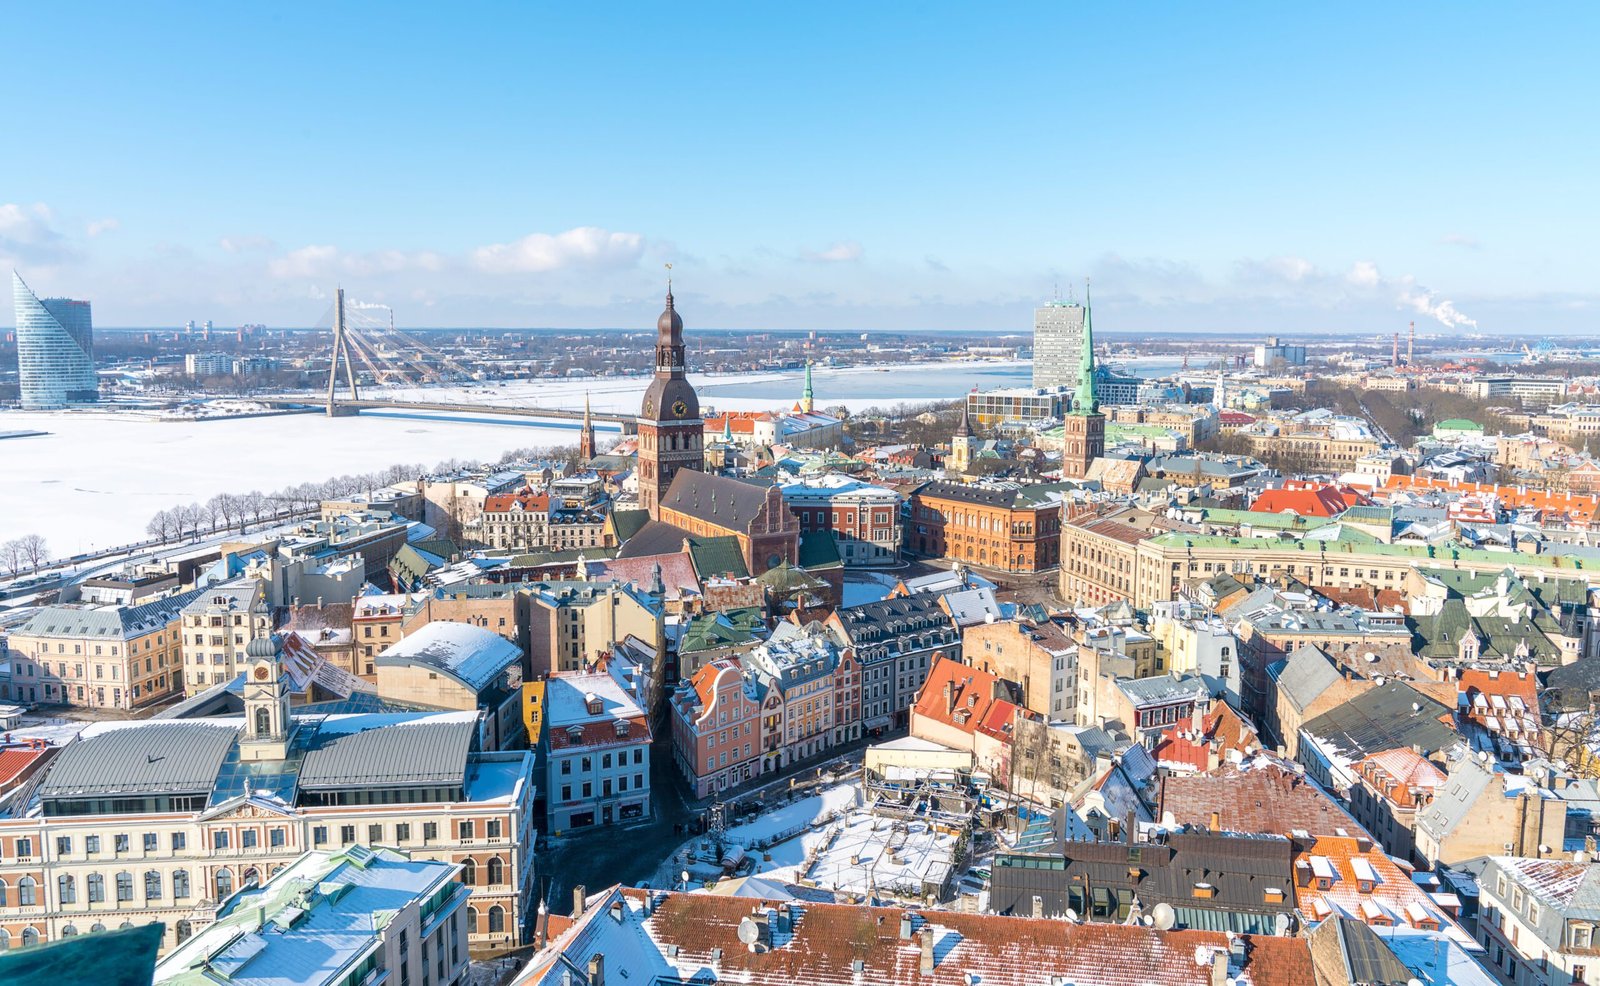 دليل السياحة لأفضل الأماكن والمأكولات والنصائح للسفر إلى السويد